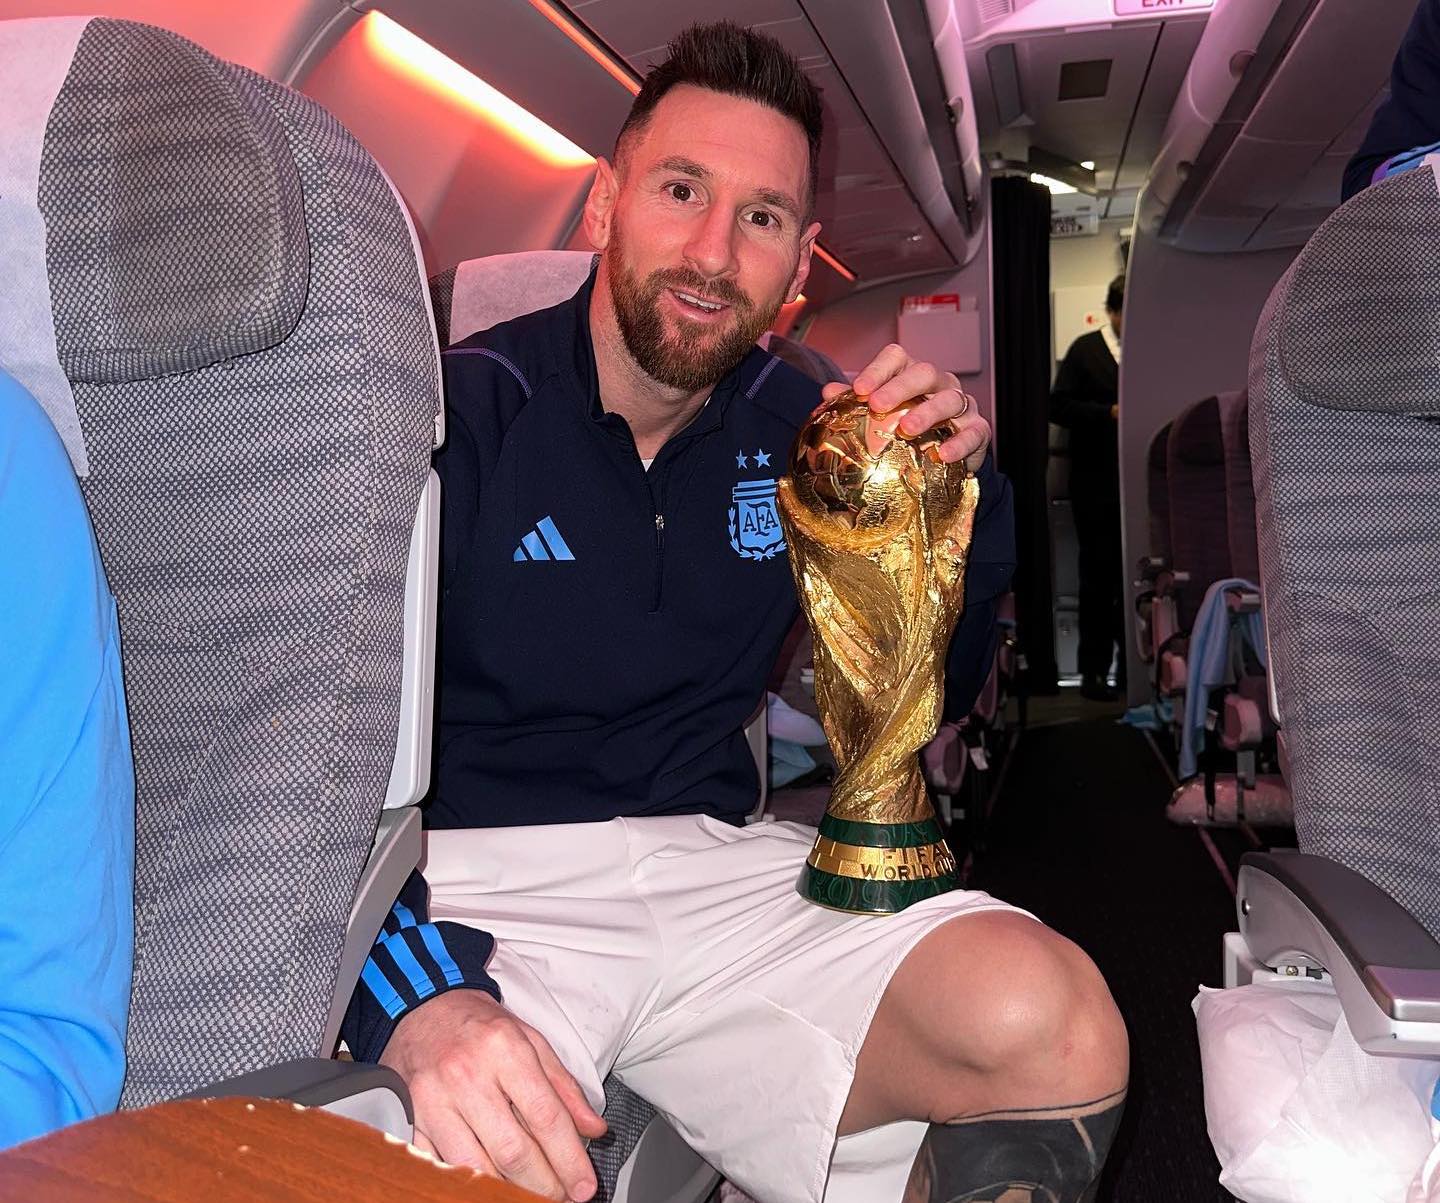 Siêu sao Lionel Messi đã đưa đội tuyển Argentina đến chiến thắng và vô địch World Cup 2022! Hãy xem hình ảnh của anh ta tại giải đấu này để thấy sự vĩ đại của một cầu thủ đáng ngưỡng mộ như Messi.